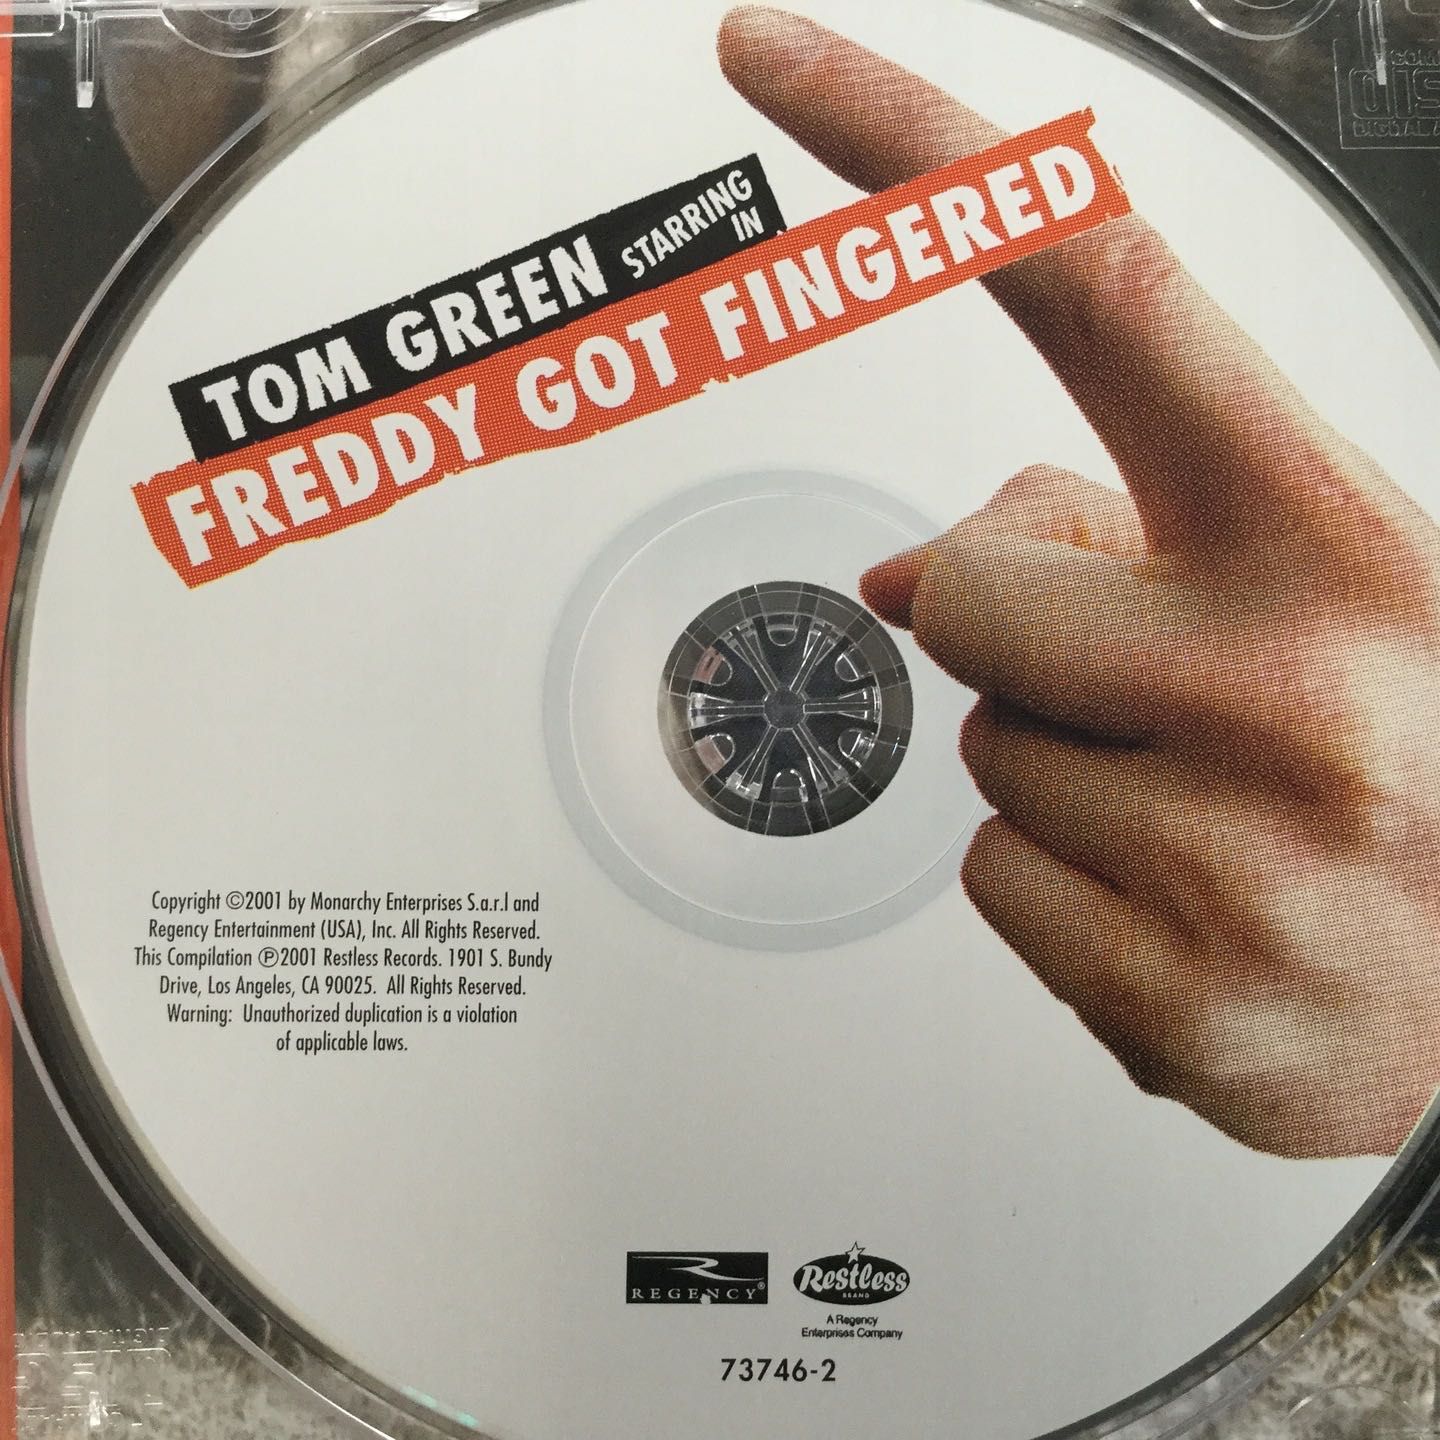 Tom Green Starring In Freddy Got Fingered V/A (CD)